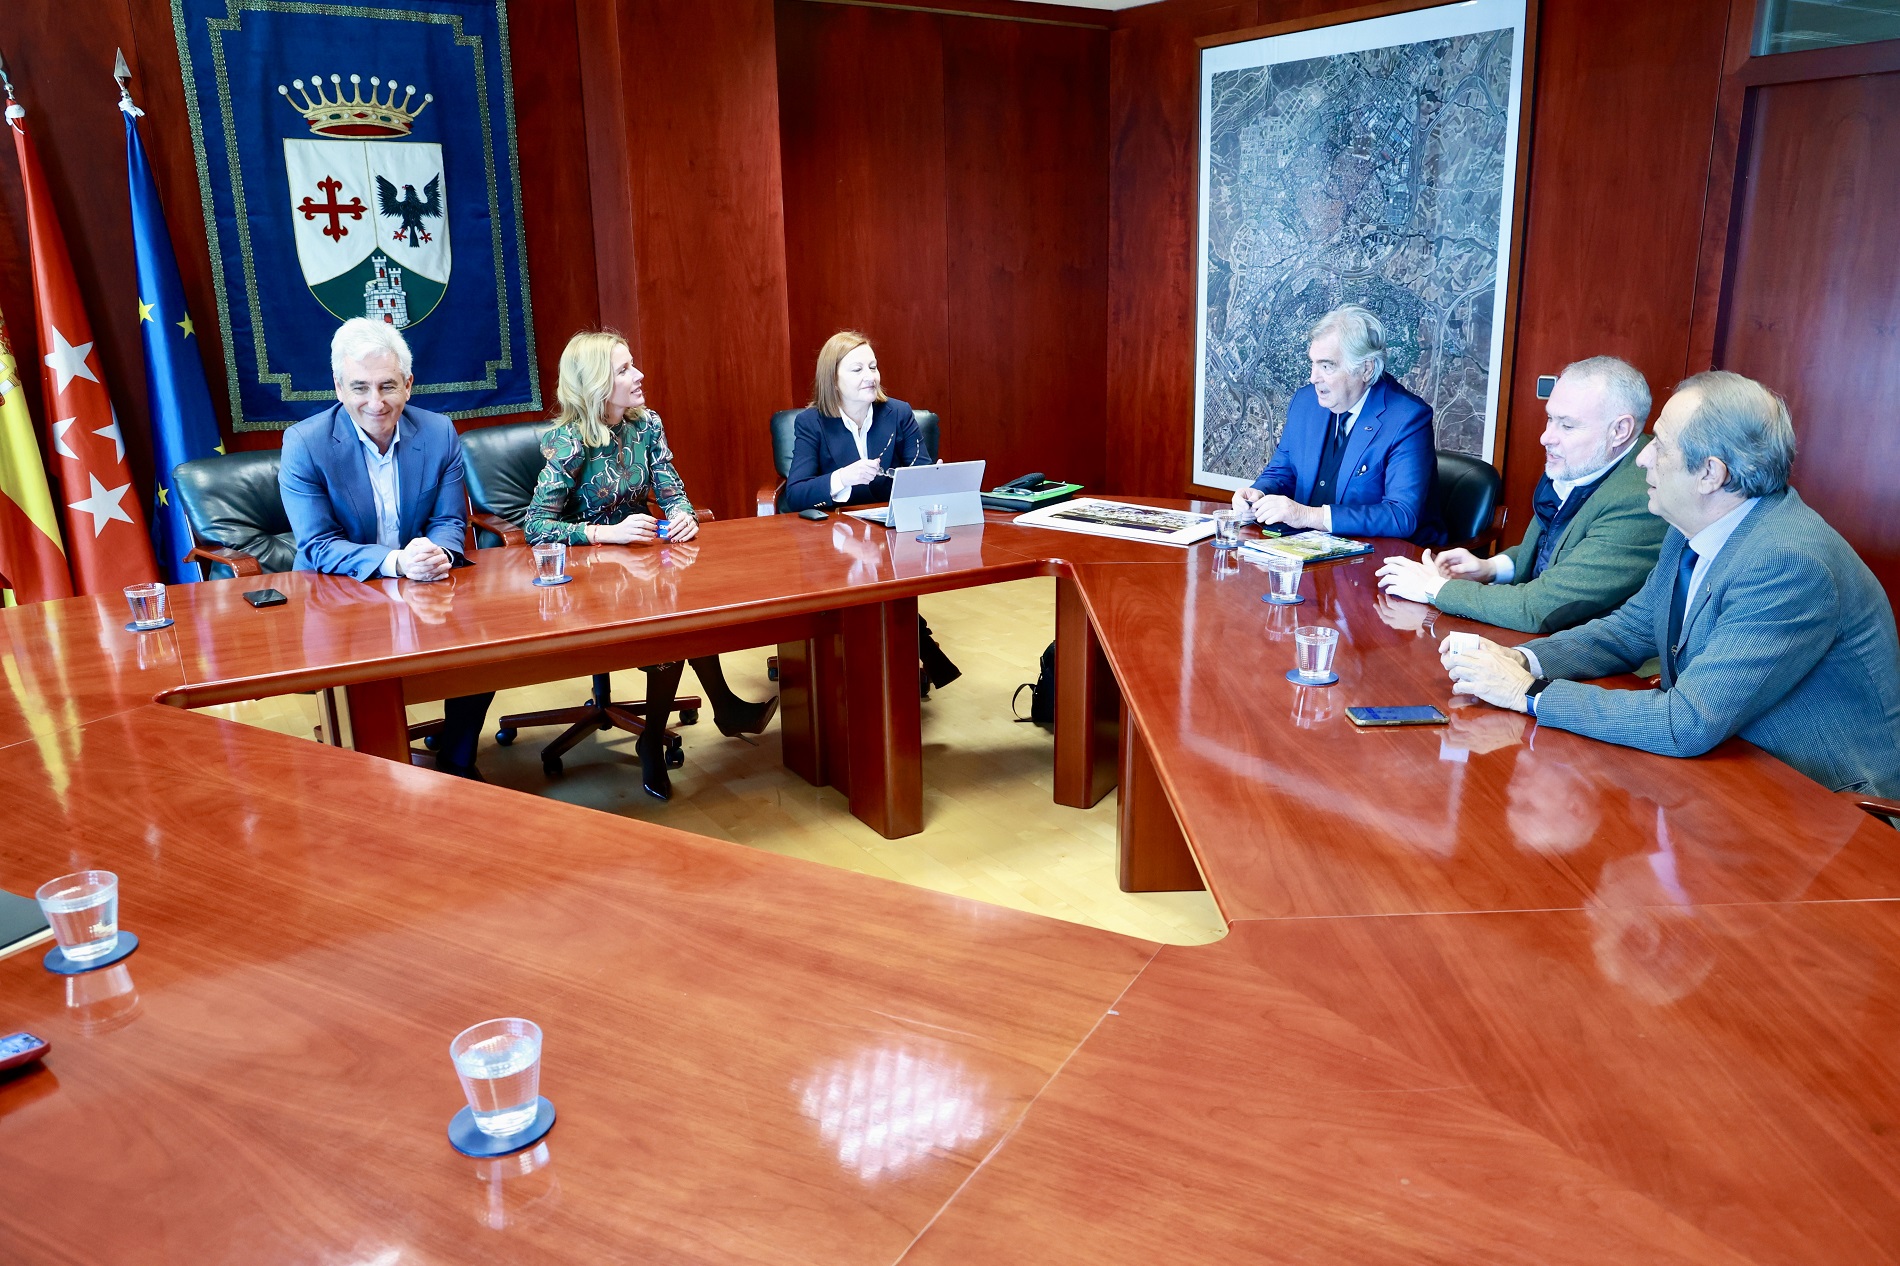 Alcobendas es ya candidata oficial a ‘Ciudad Europea del Deporte 2025’